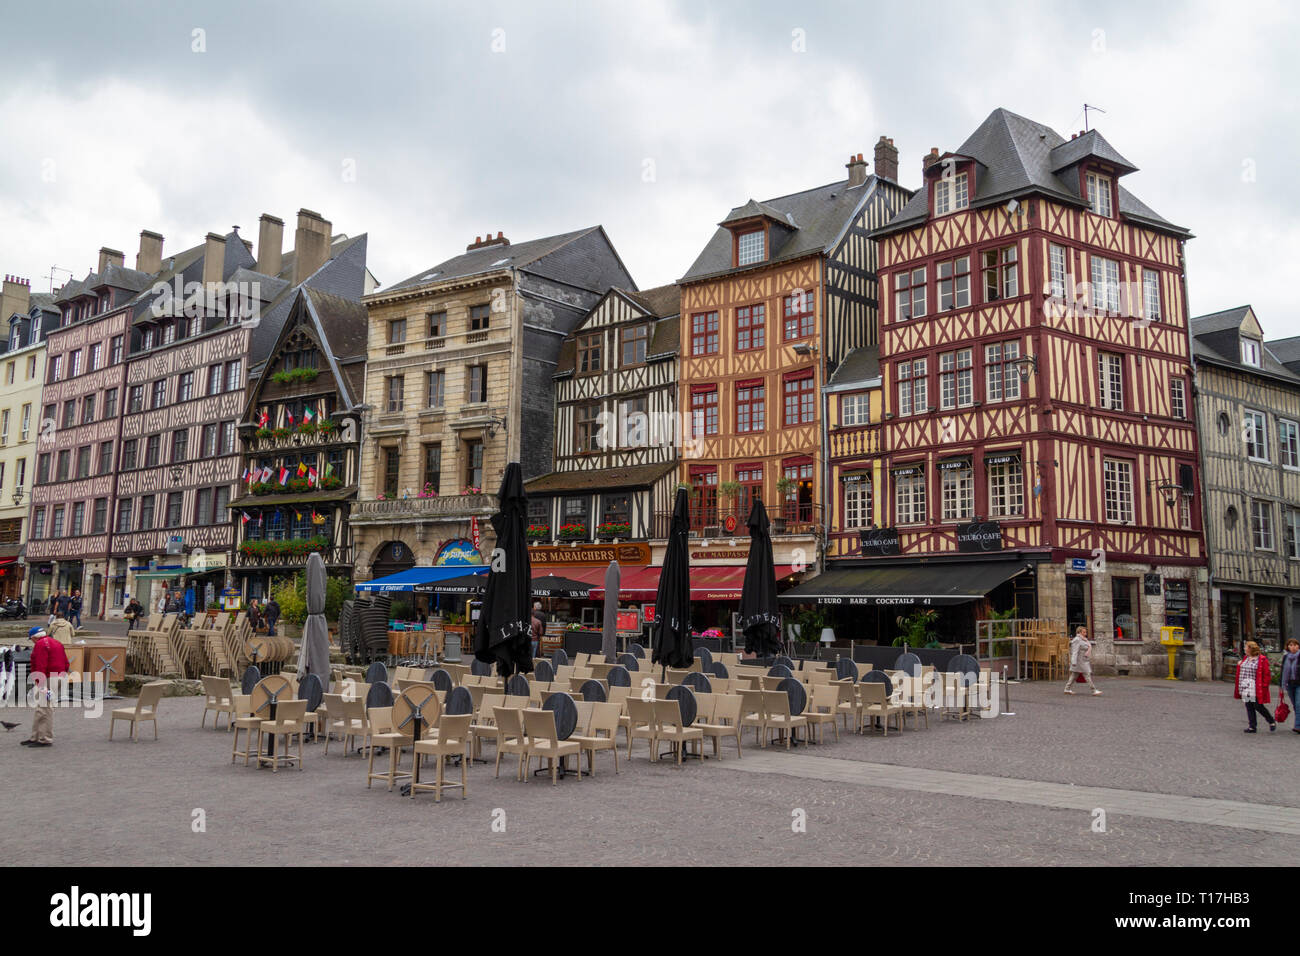 Vue générale de bâtiments anciens le long de la rue de la Pie à Rouen, France. Cette zone est à proximité du centre historique de Rouen. Banque D'Images